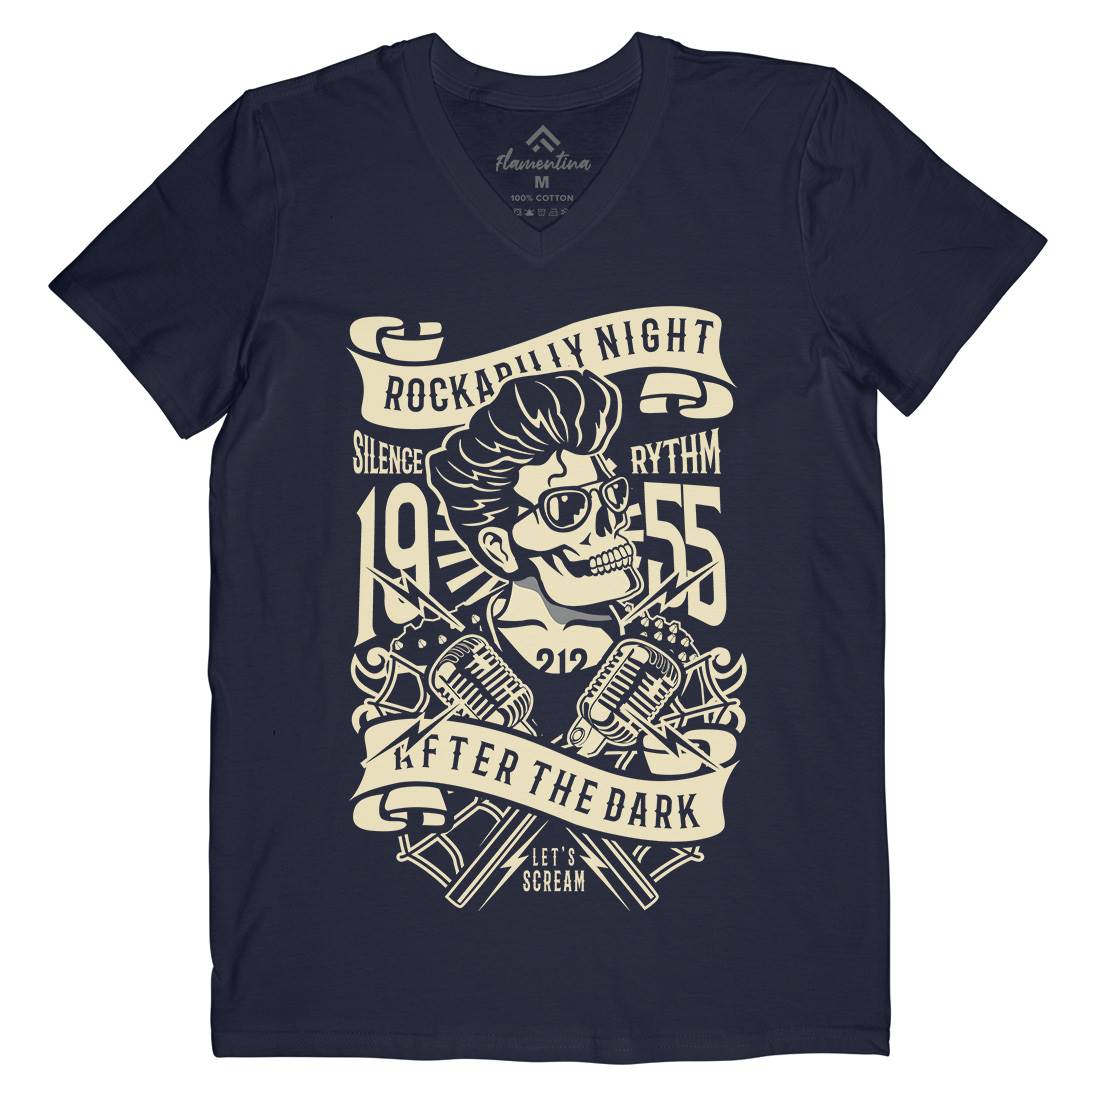 Rockabilly Night Mens Organic V-Neck T-Shirt Music B249